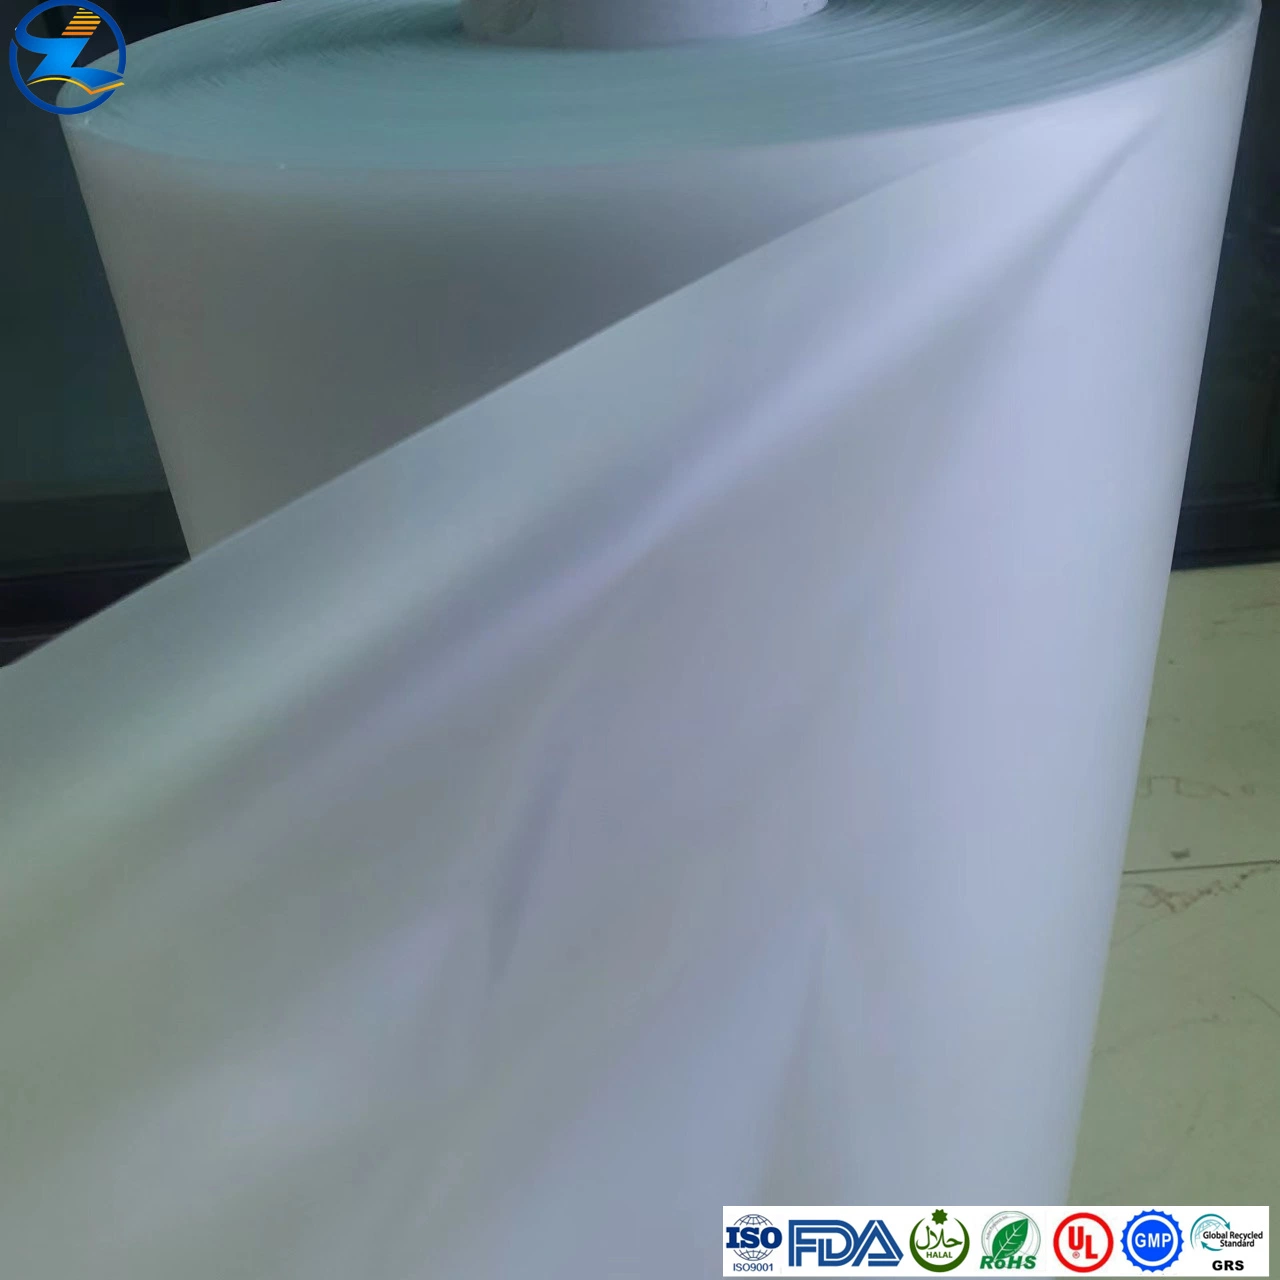 مادة خام غير قابلة للاستخدام في كيس العزل مصنوعة من مادة البولي فينيل كلوريد (PVC) ناعمة خالية من المواد الحرارية